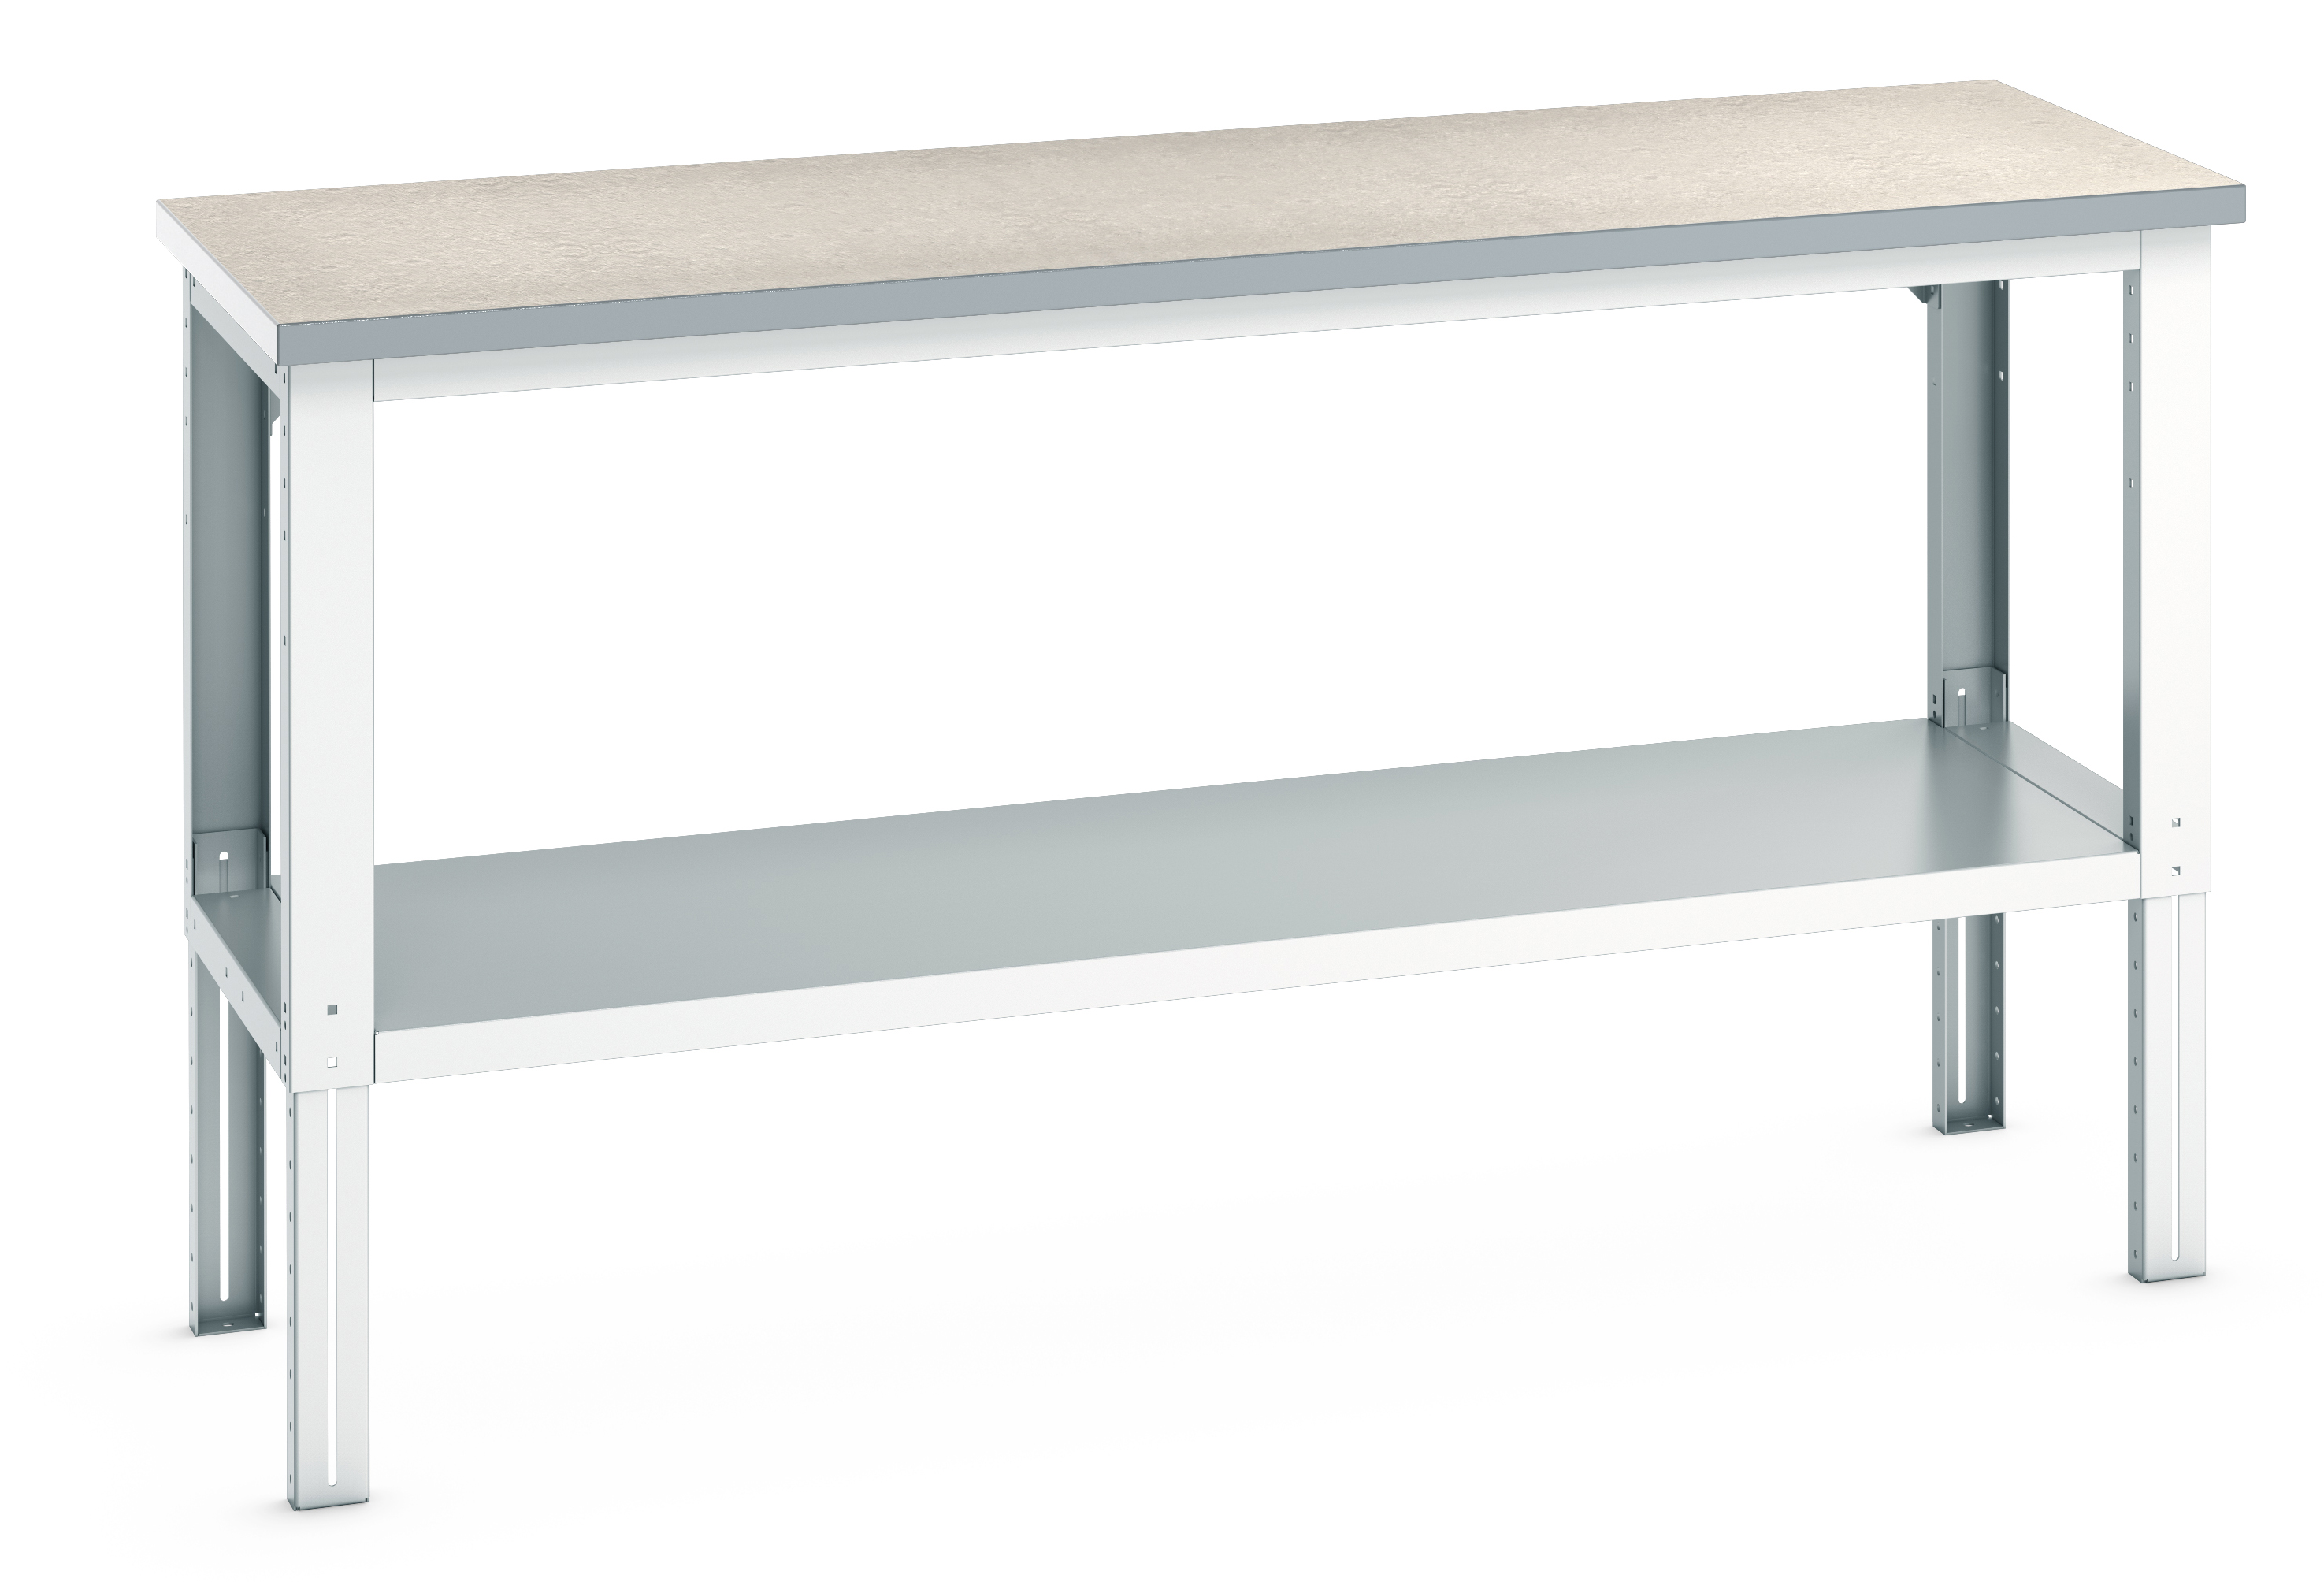 Bott Cubio Adjustable Height Framework Bench With Full Depth Base Shelf - 41003510.16V